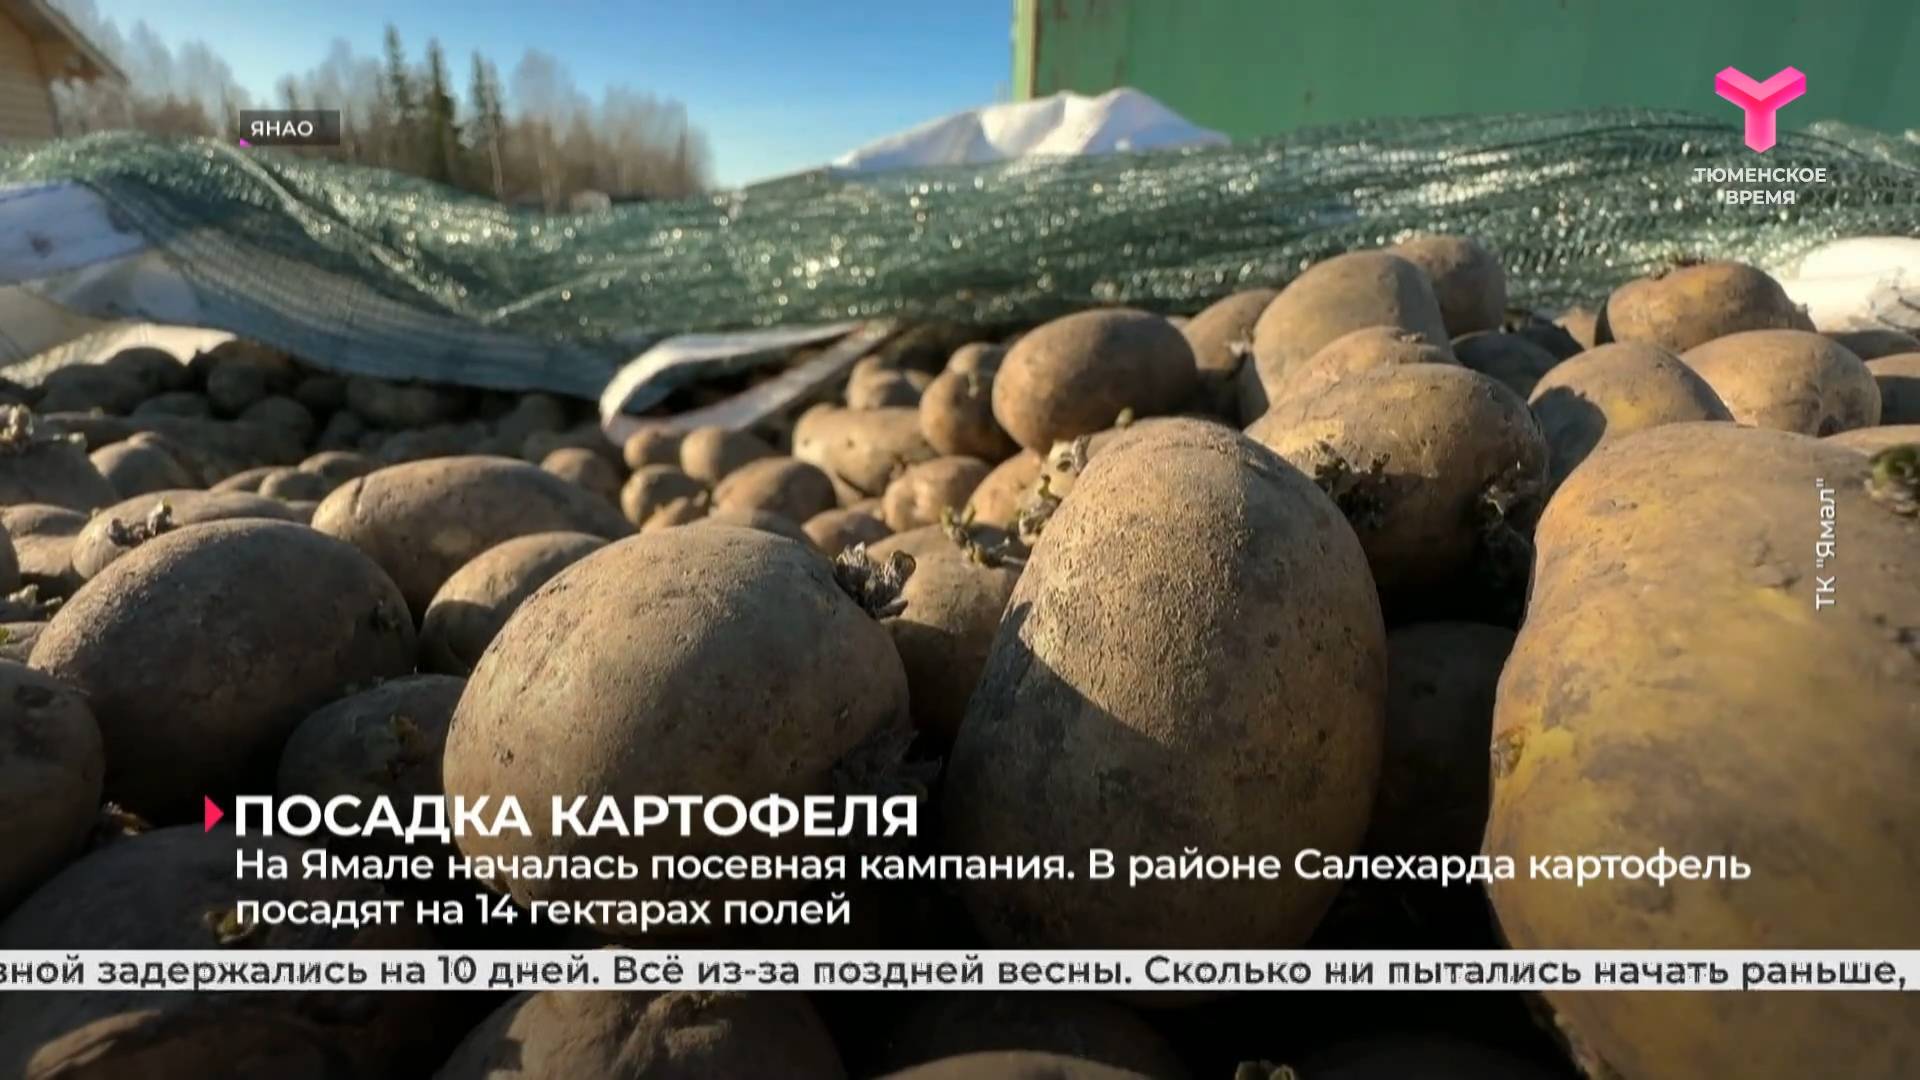 На Ямале началась посевная кампания. В районе Салехарда картофель посадят на 14 гектарах полей